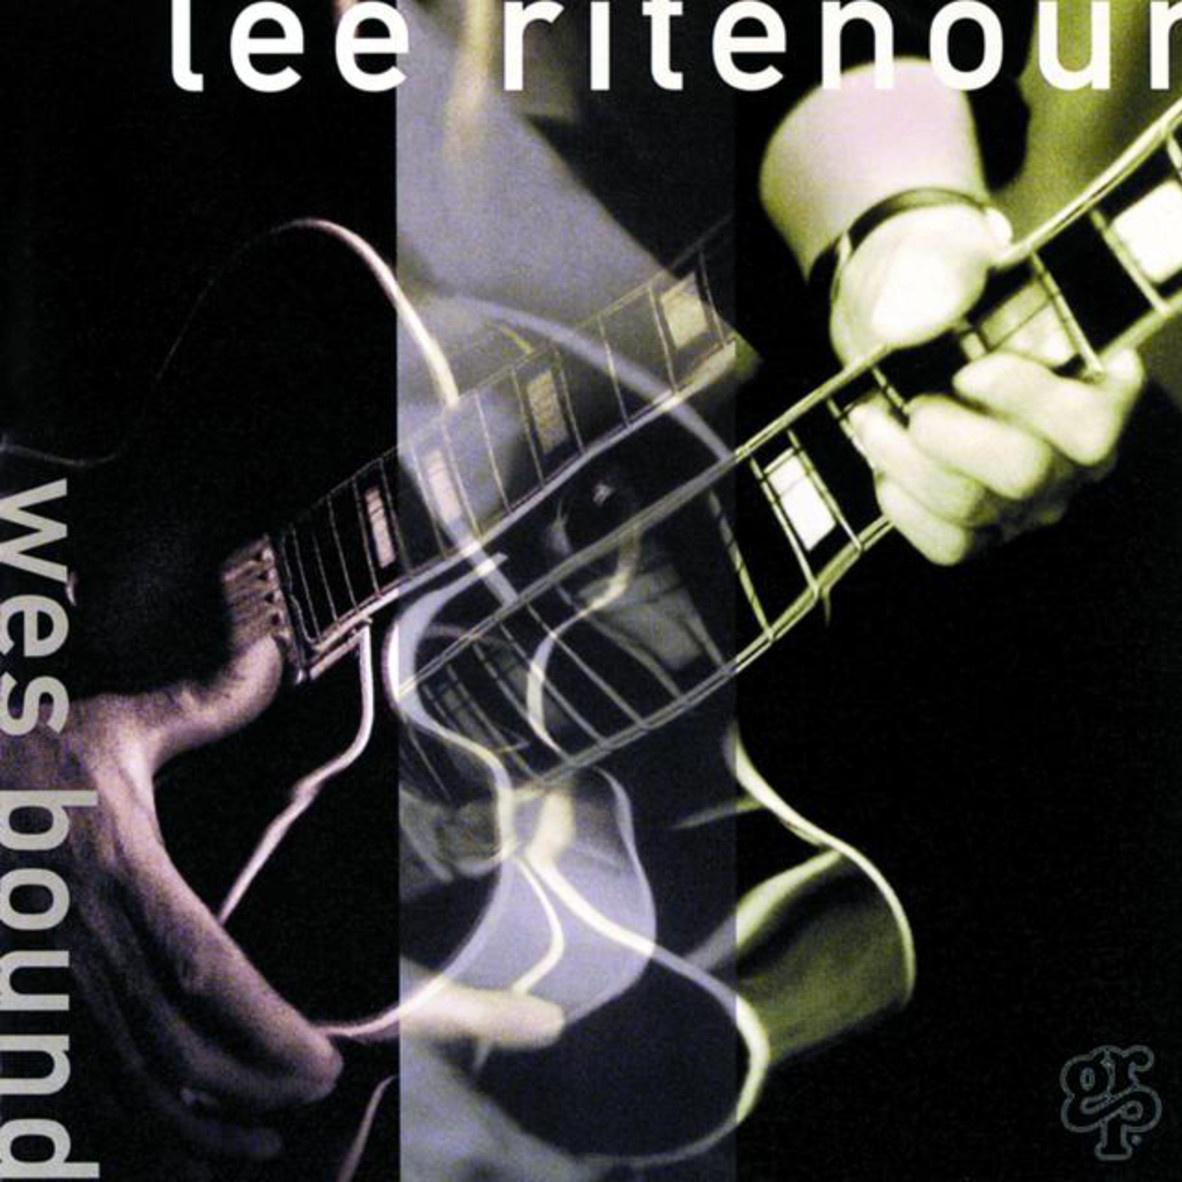 Lee Ritenour - West Coast Blues